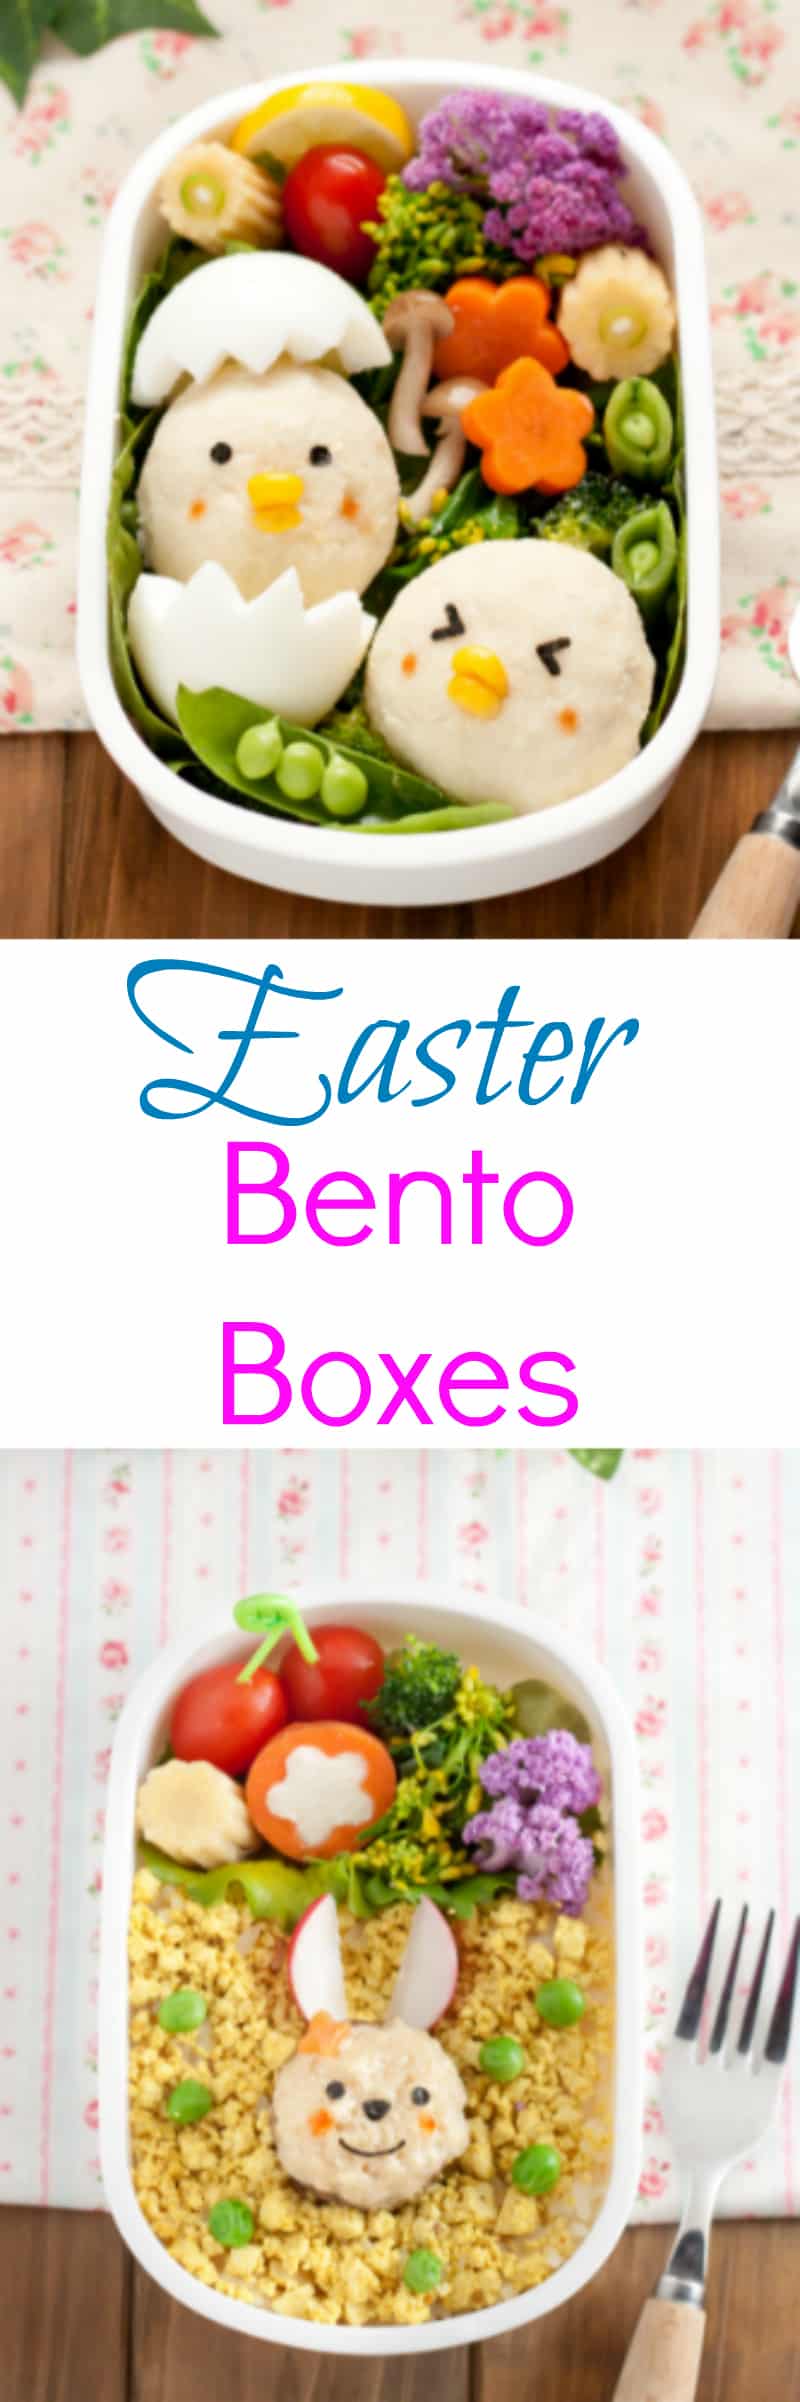 Easter bento box